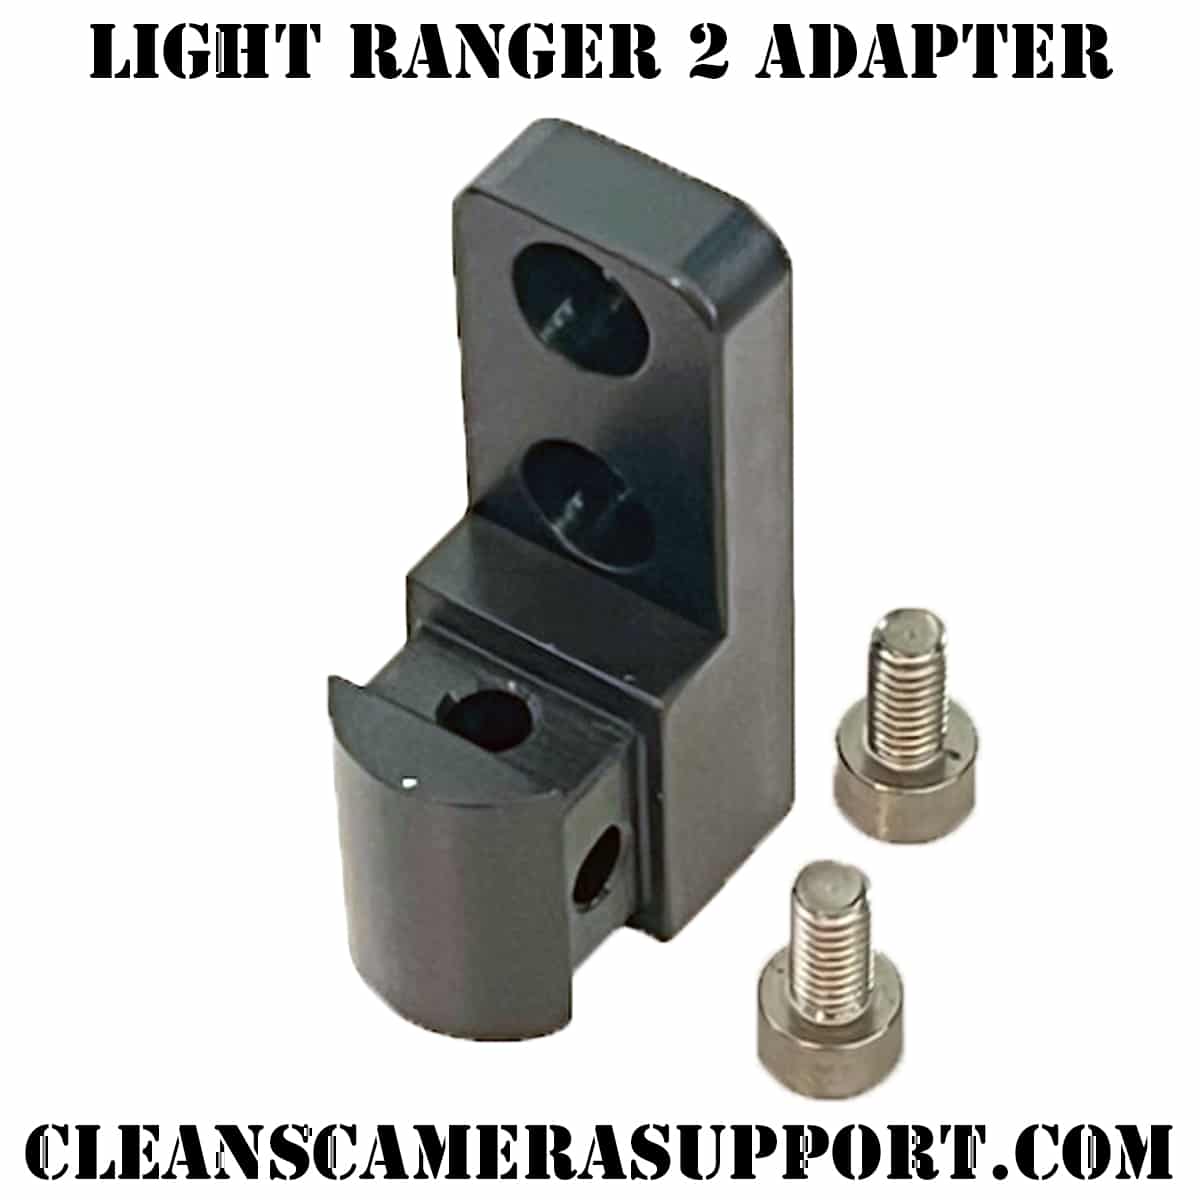 preston cinema systems light ranger 2 adapter